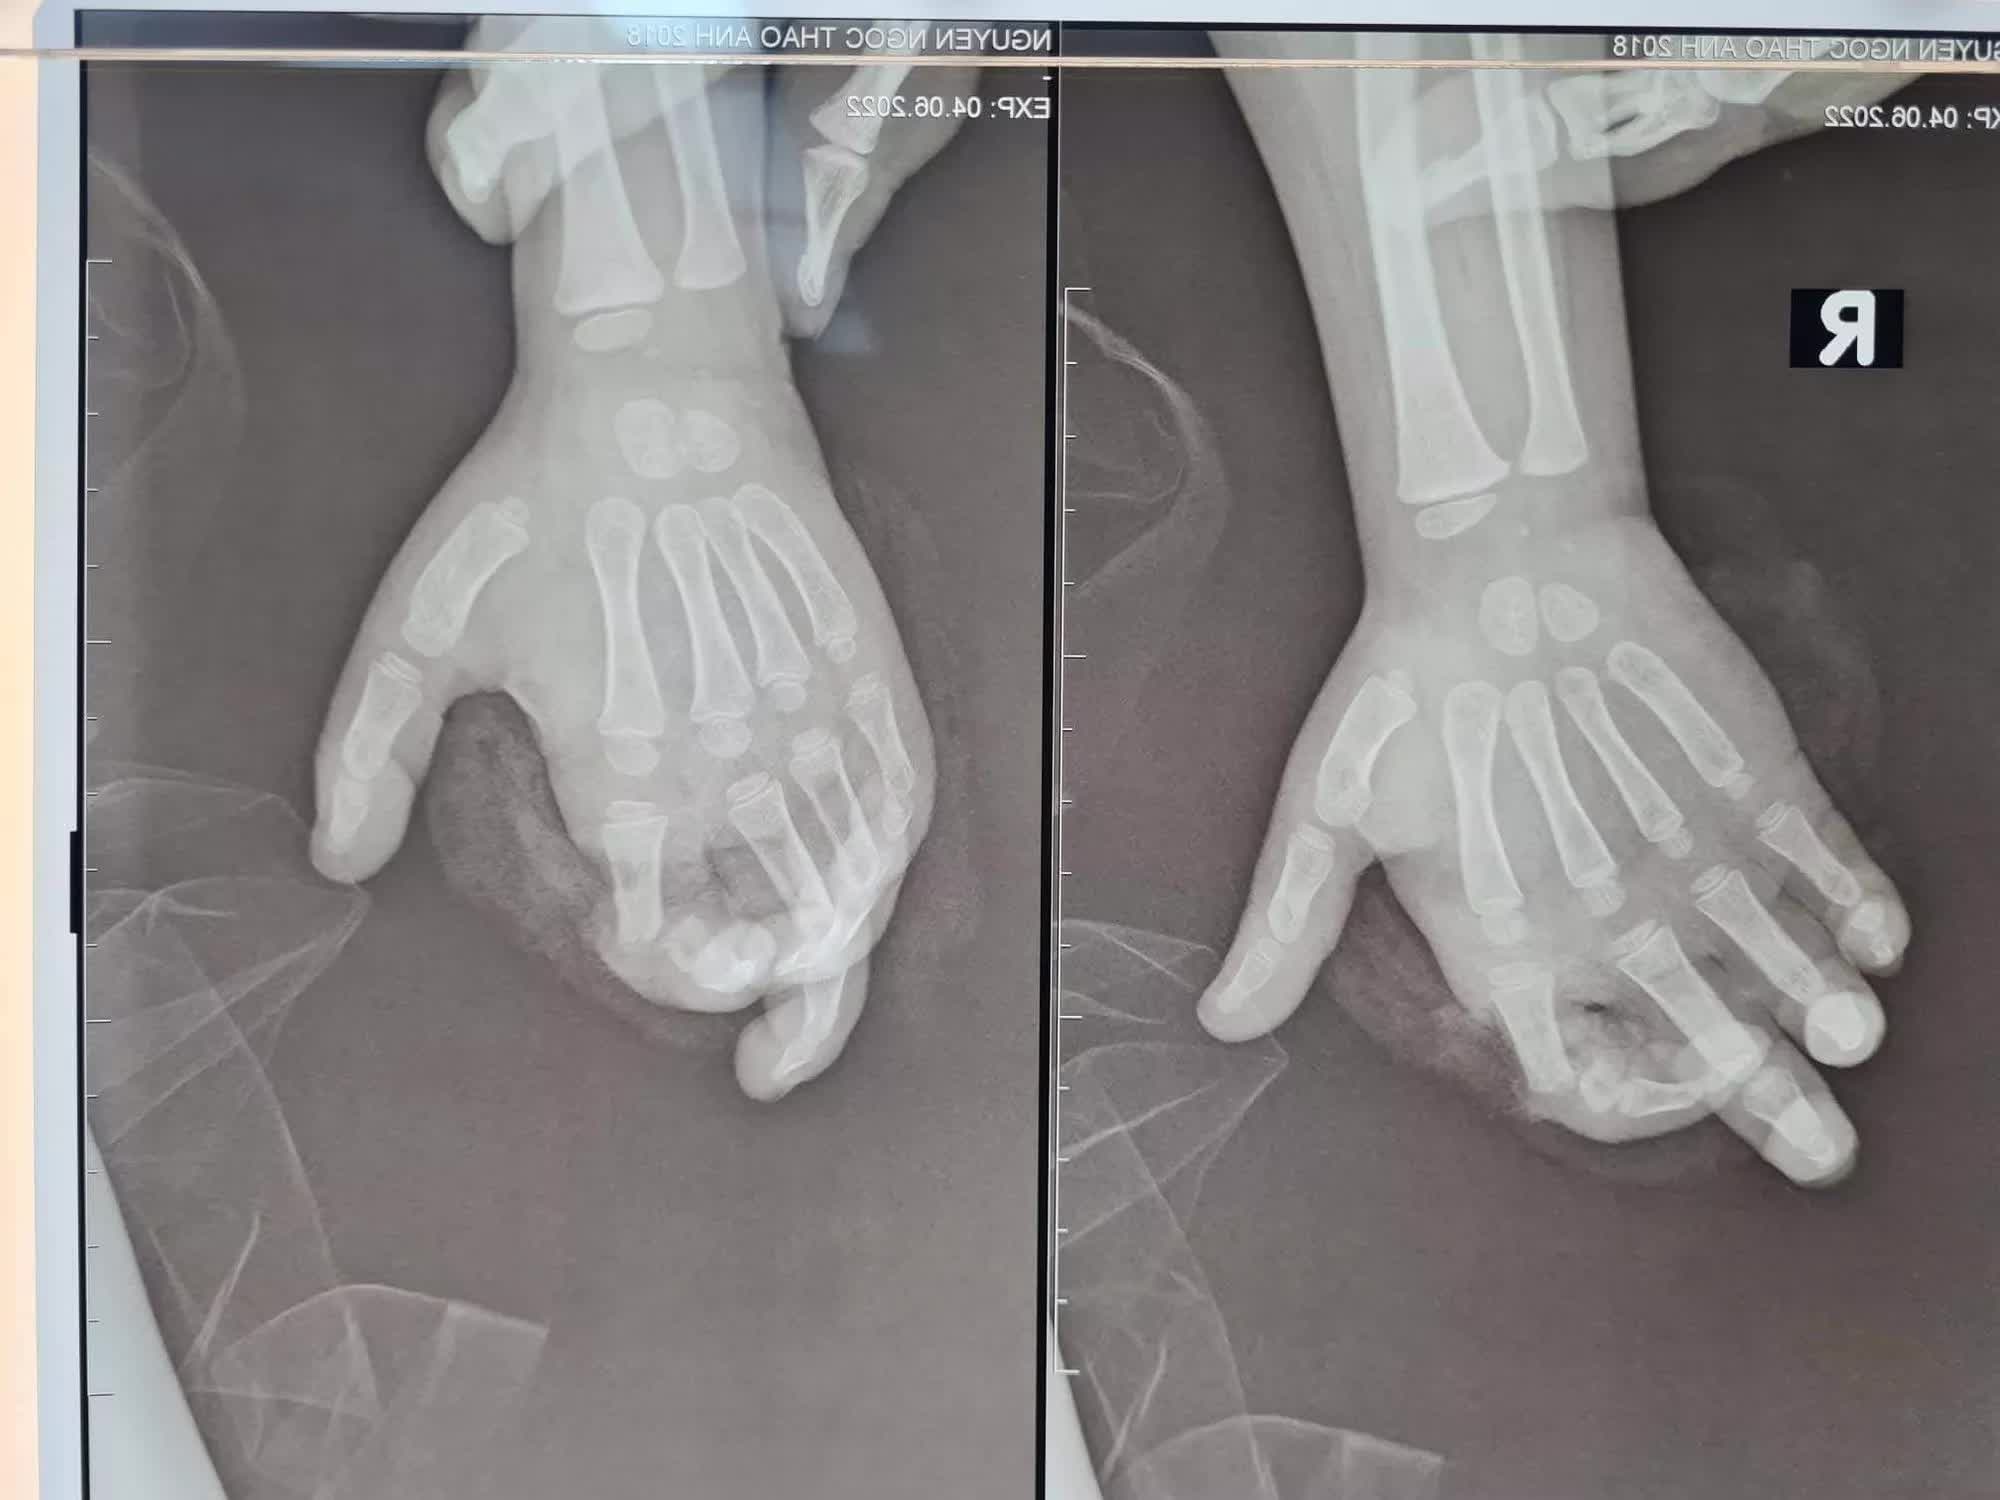 Máy xay sinh tố nghiền nát ngón tay bé gái ở Hà Nội-1